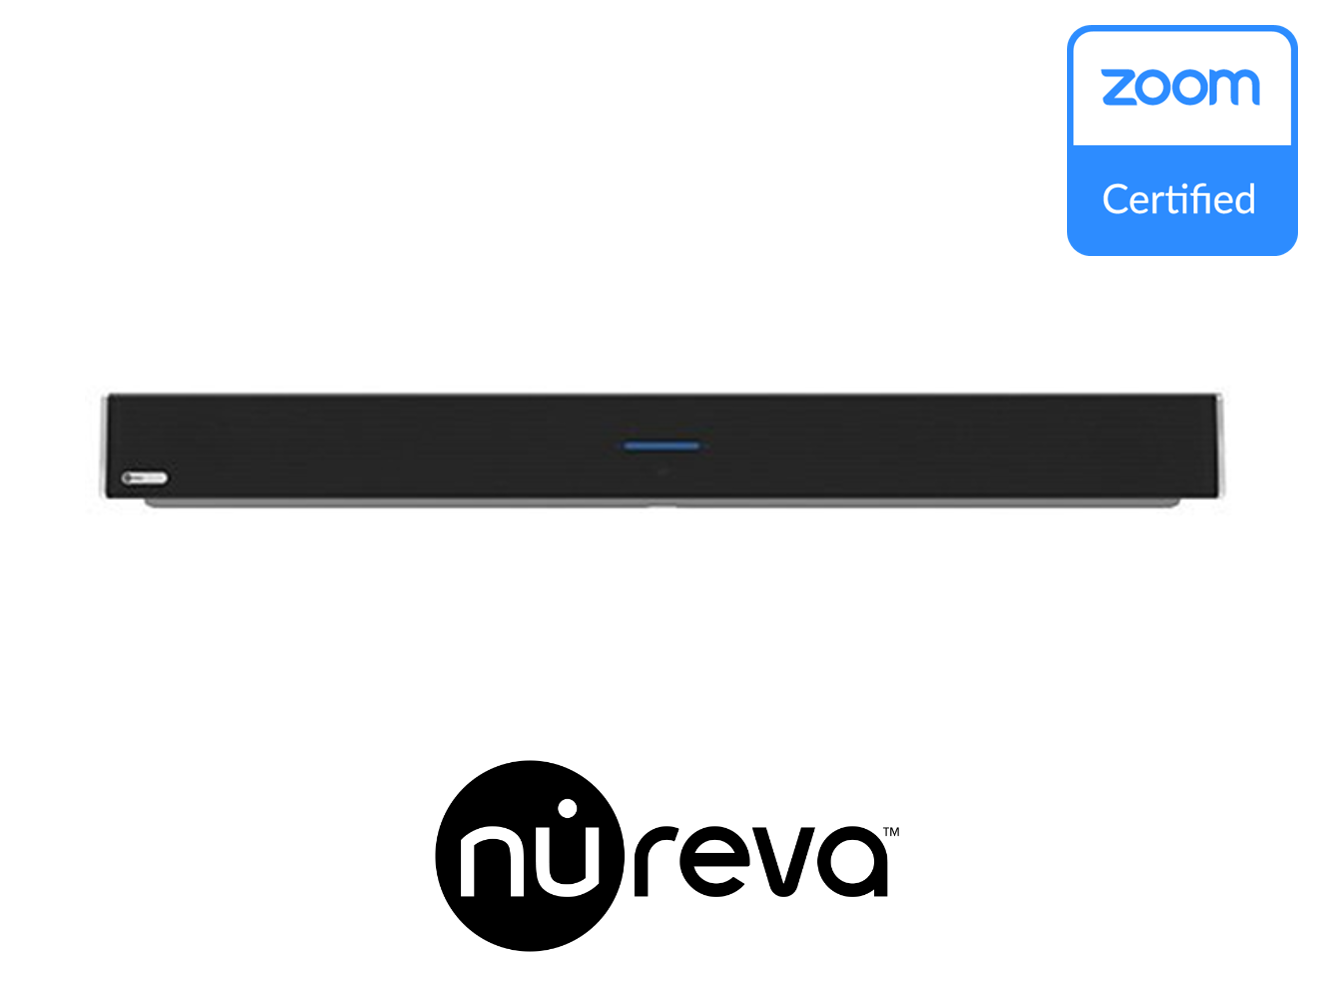 Nureva HDL300 Zoom Rooms Certified